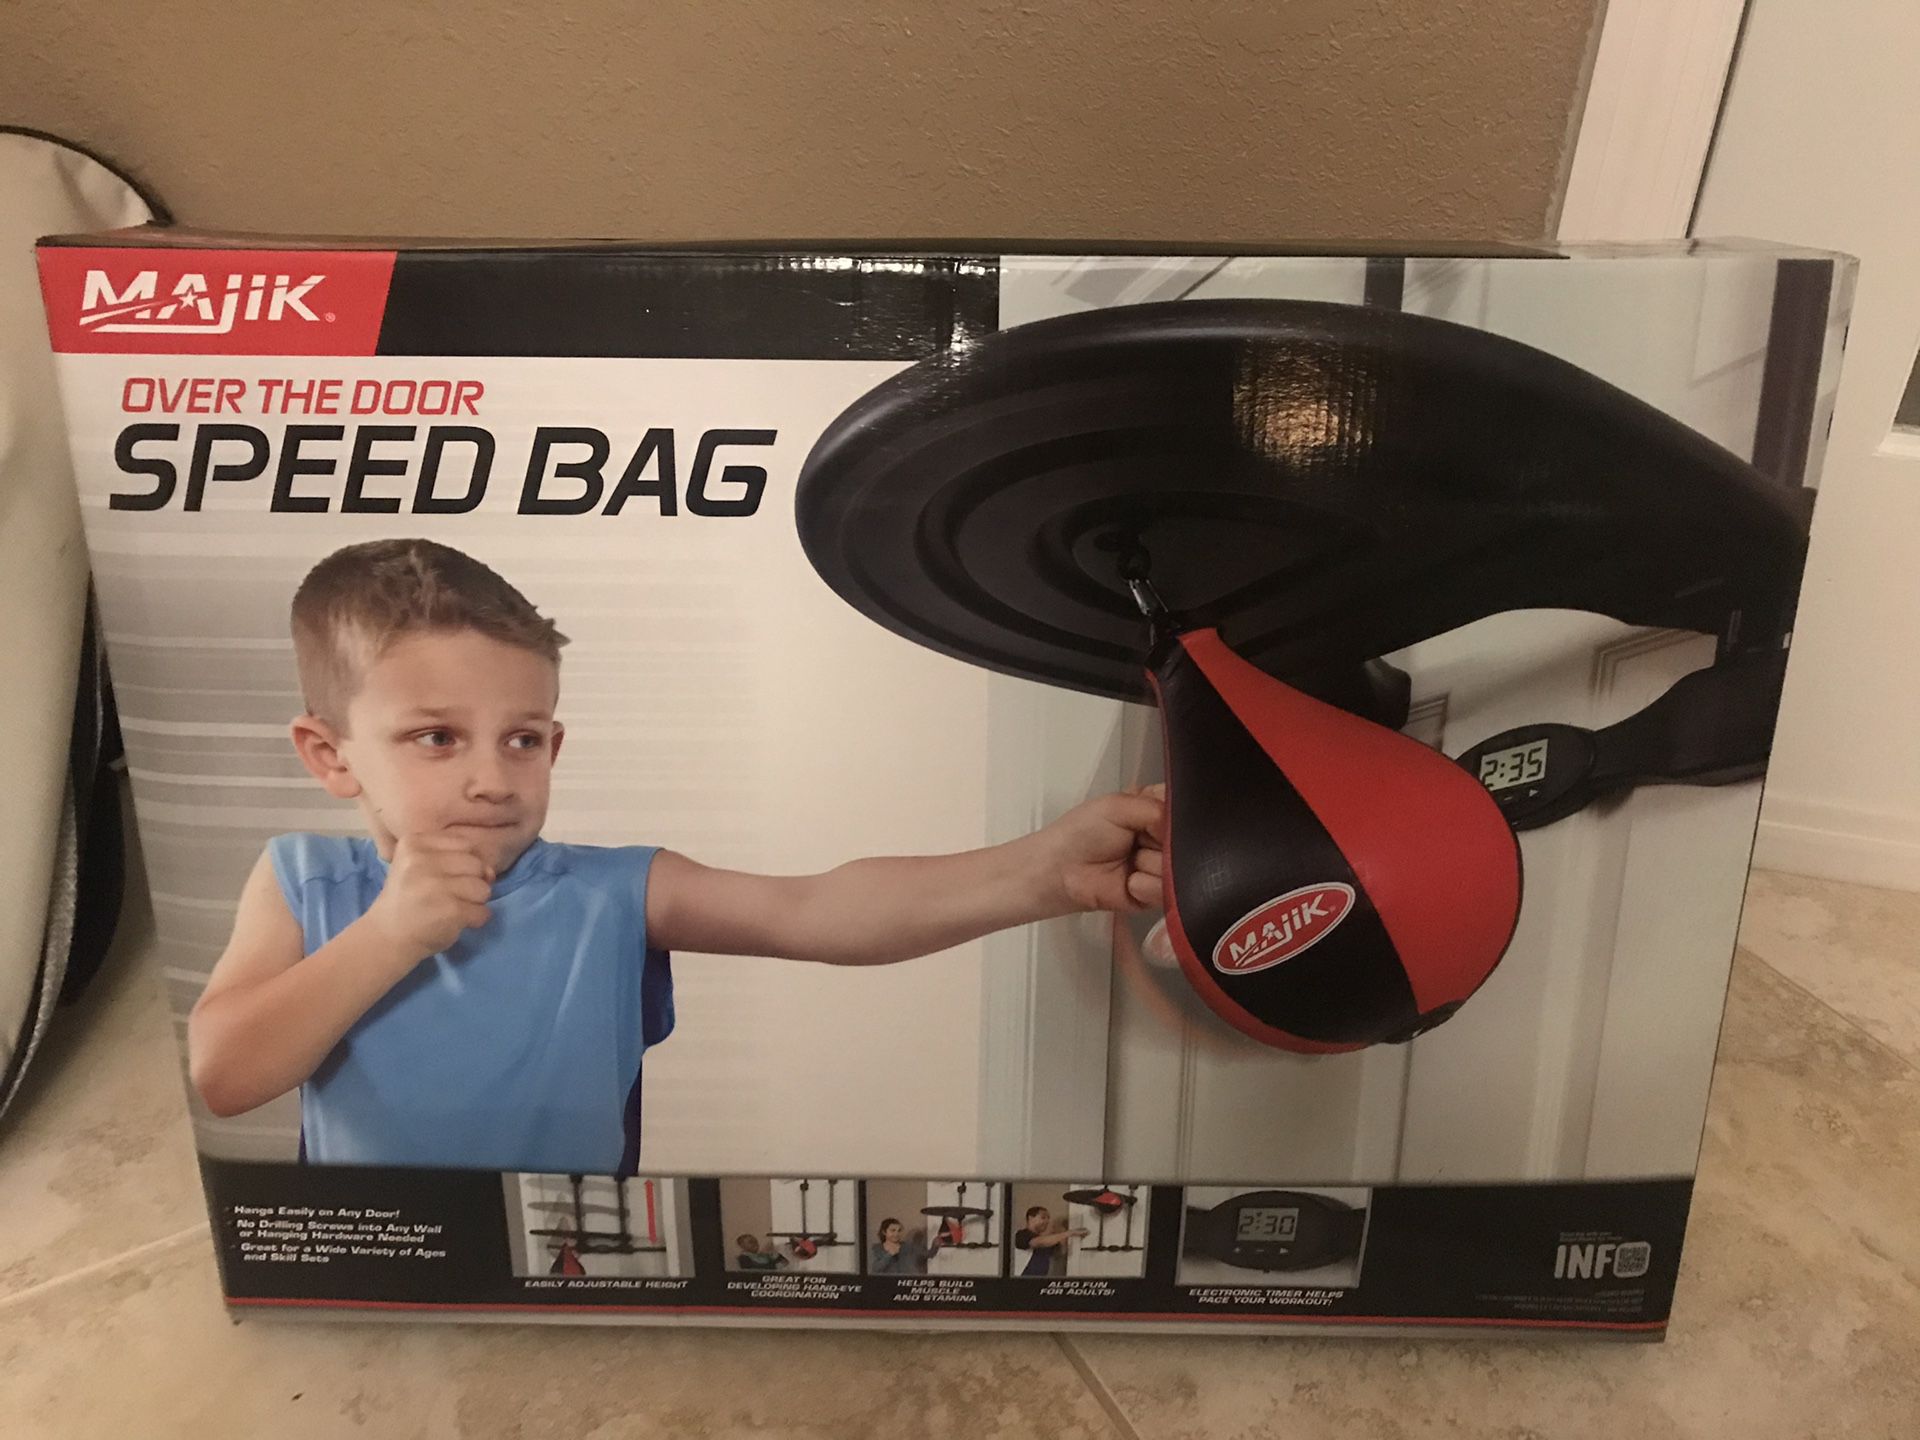 Over the door speed bag for kids!